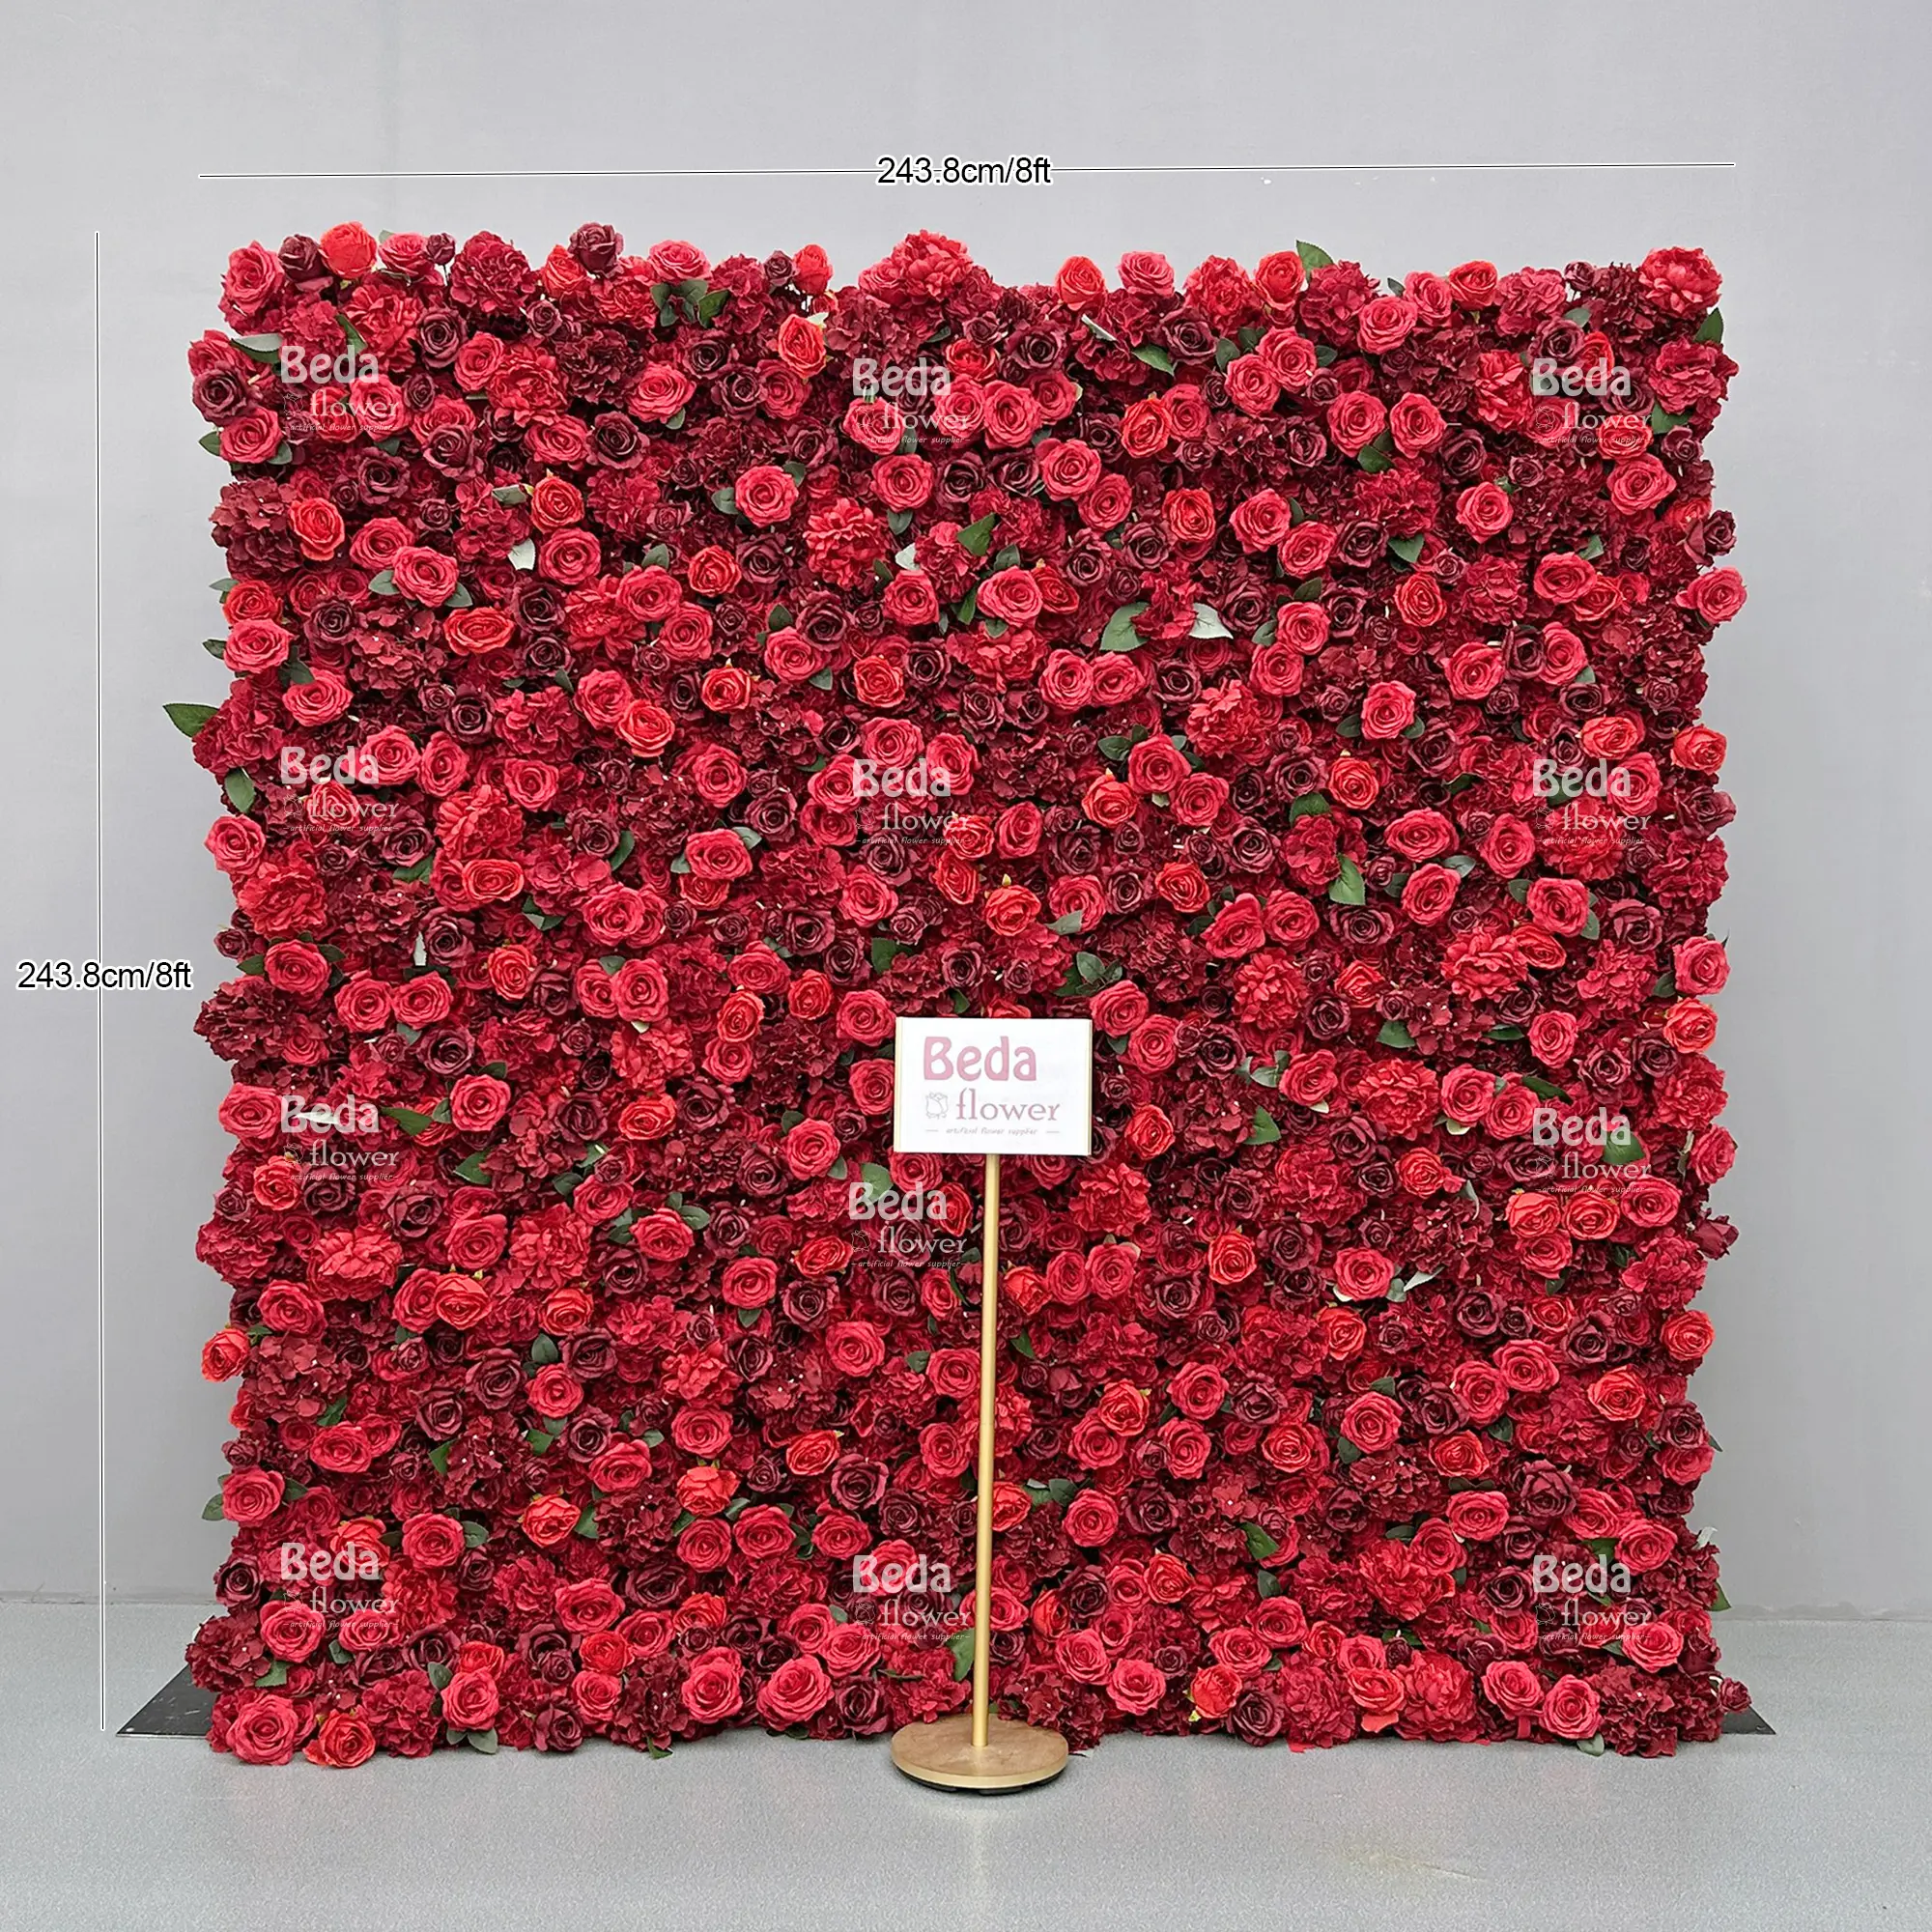 Beda dekorasi dinding bunga mawar dekorasi dinding latar belakang pernikahan kustom